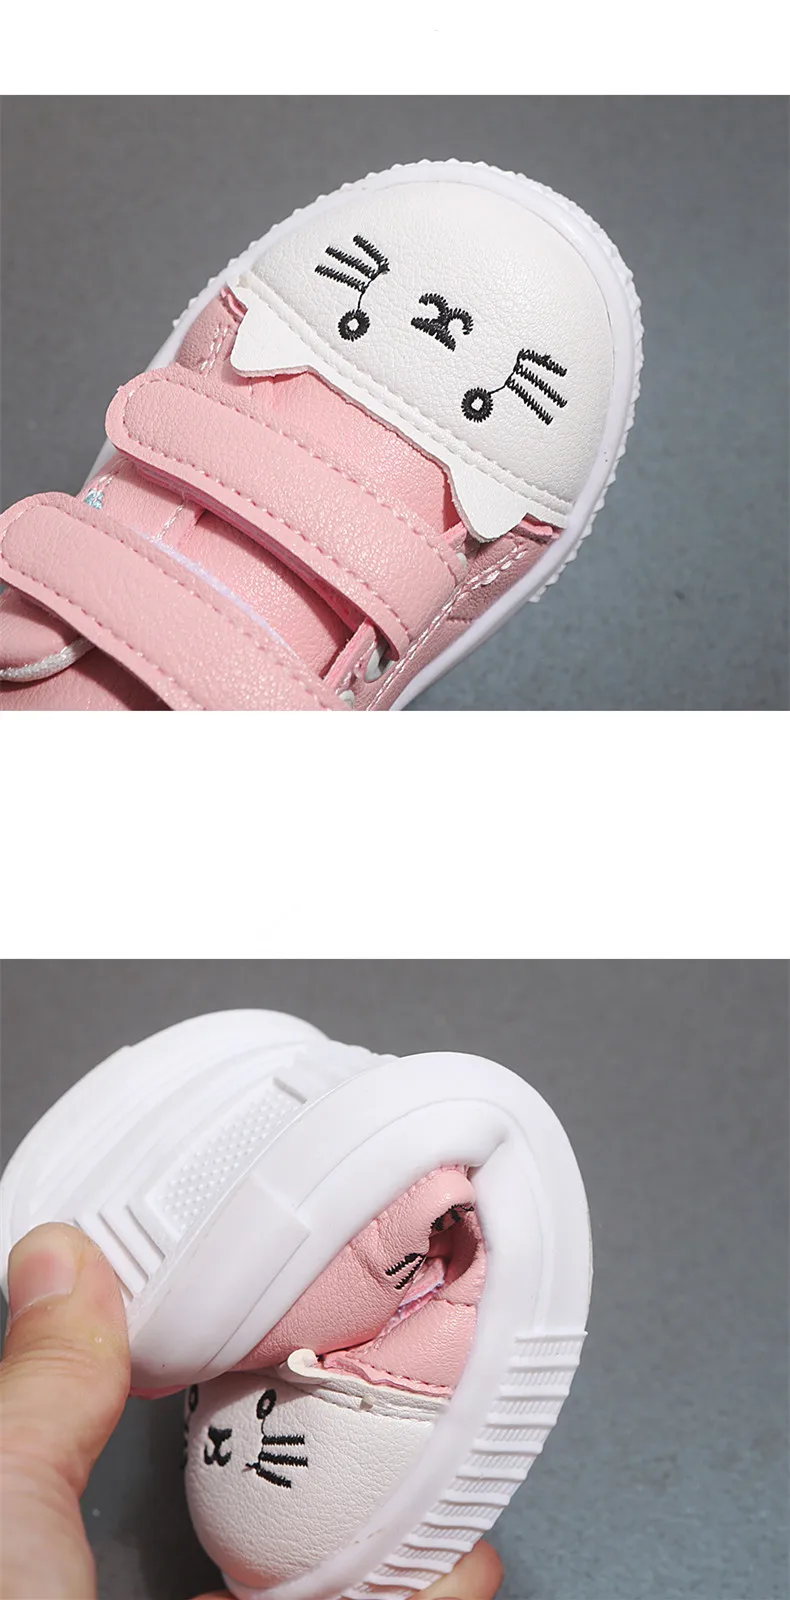 JGSHOWKITO/модная повседневная обувь для девочек; белые кроссовки для катания на коньках для малышей; детская спортивная обувь с нескользящей подошвой; милая мультяшная кошка